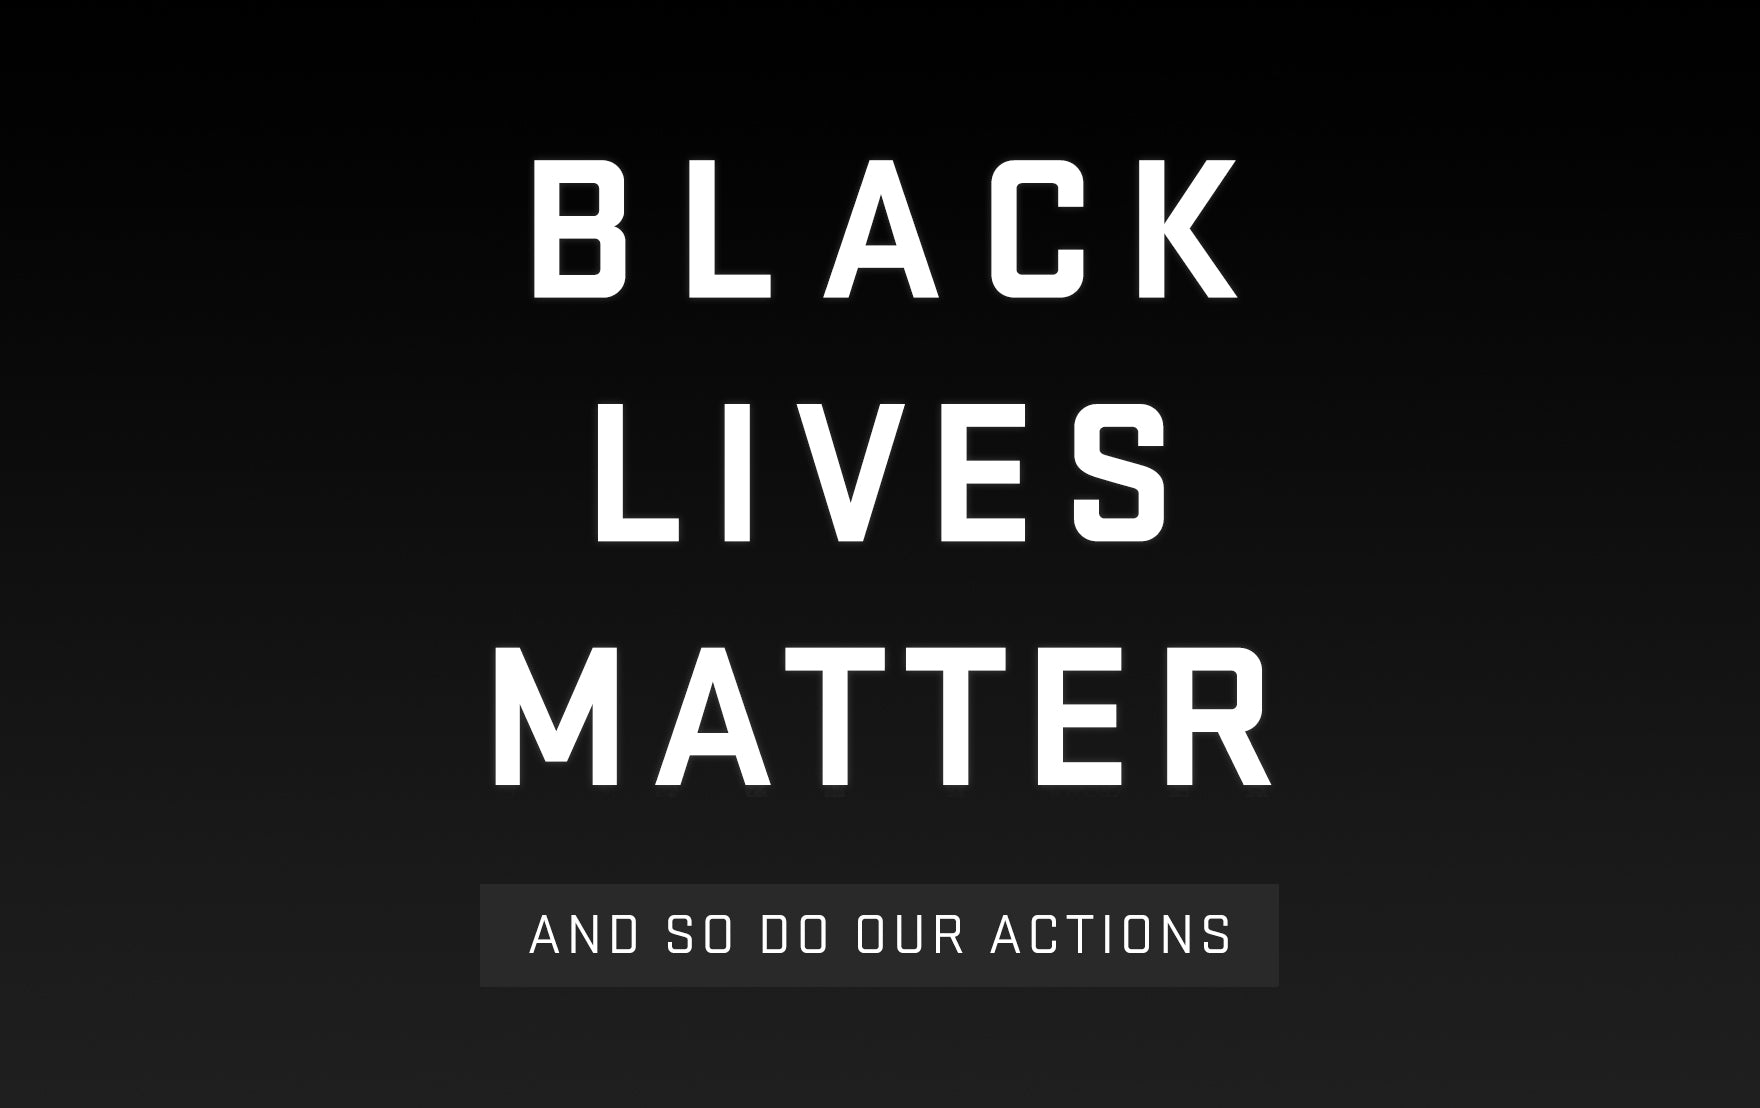 Supporting #BlackLivesMatter